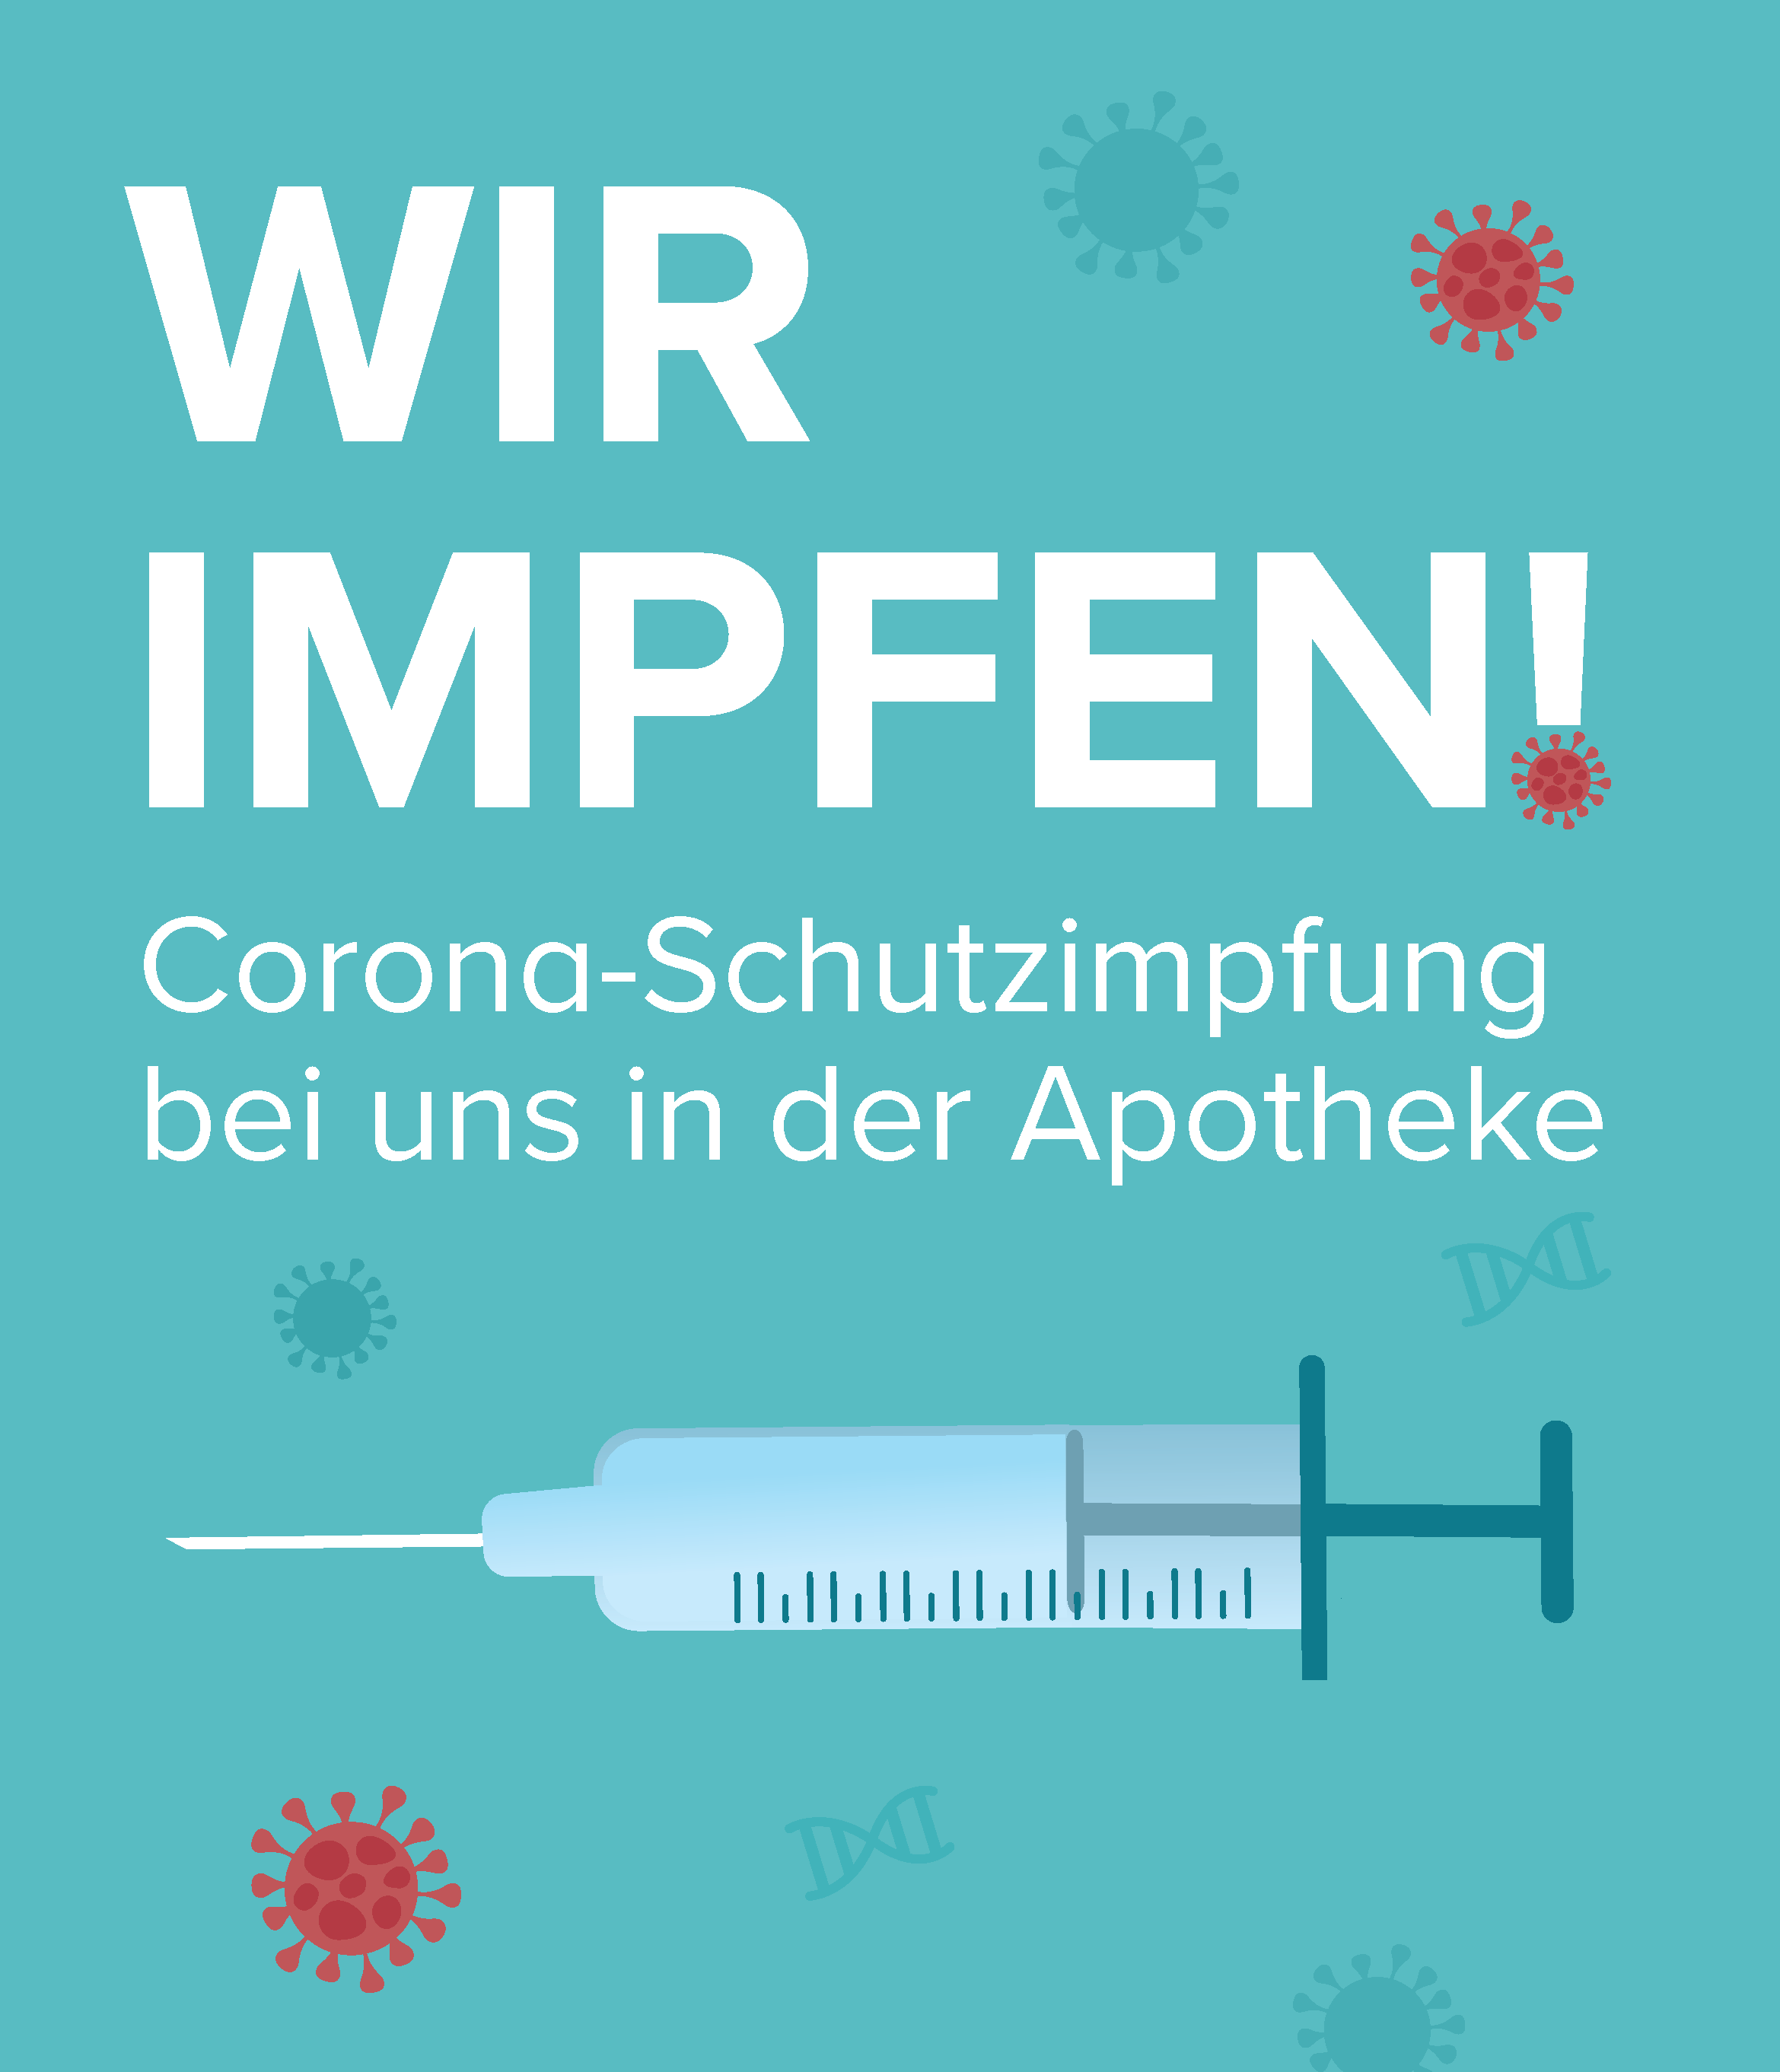 Wir impfen gegen das Coronavirus